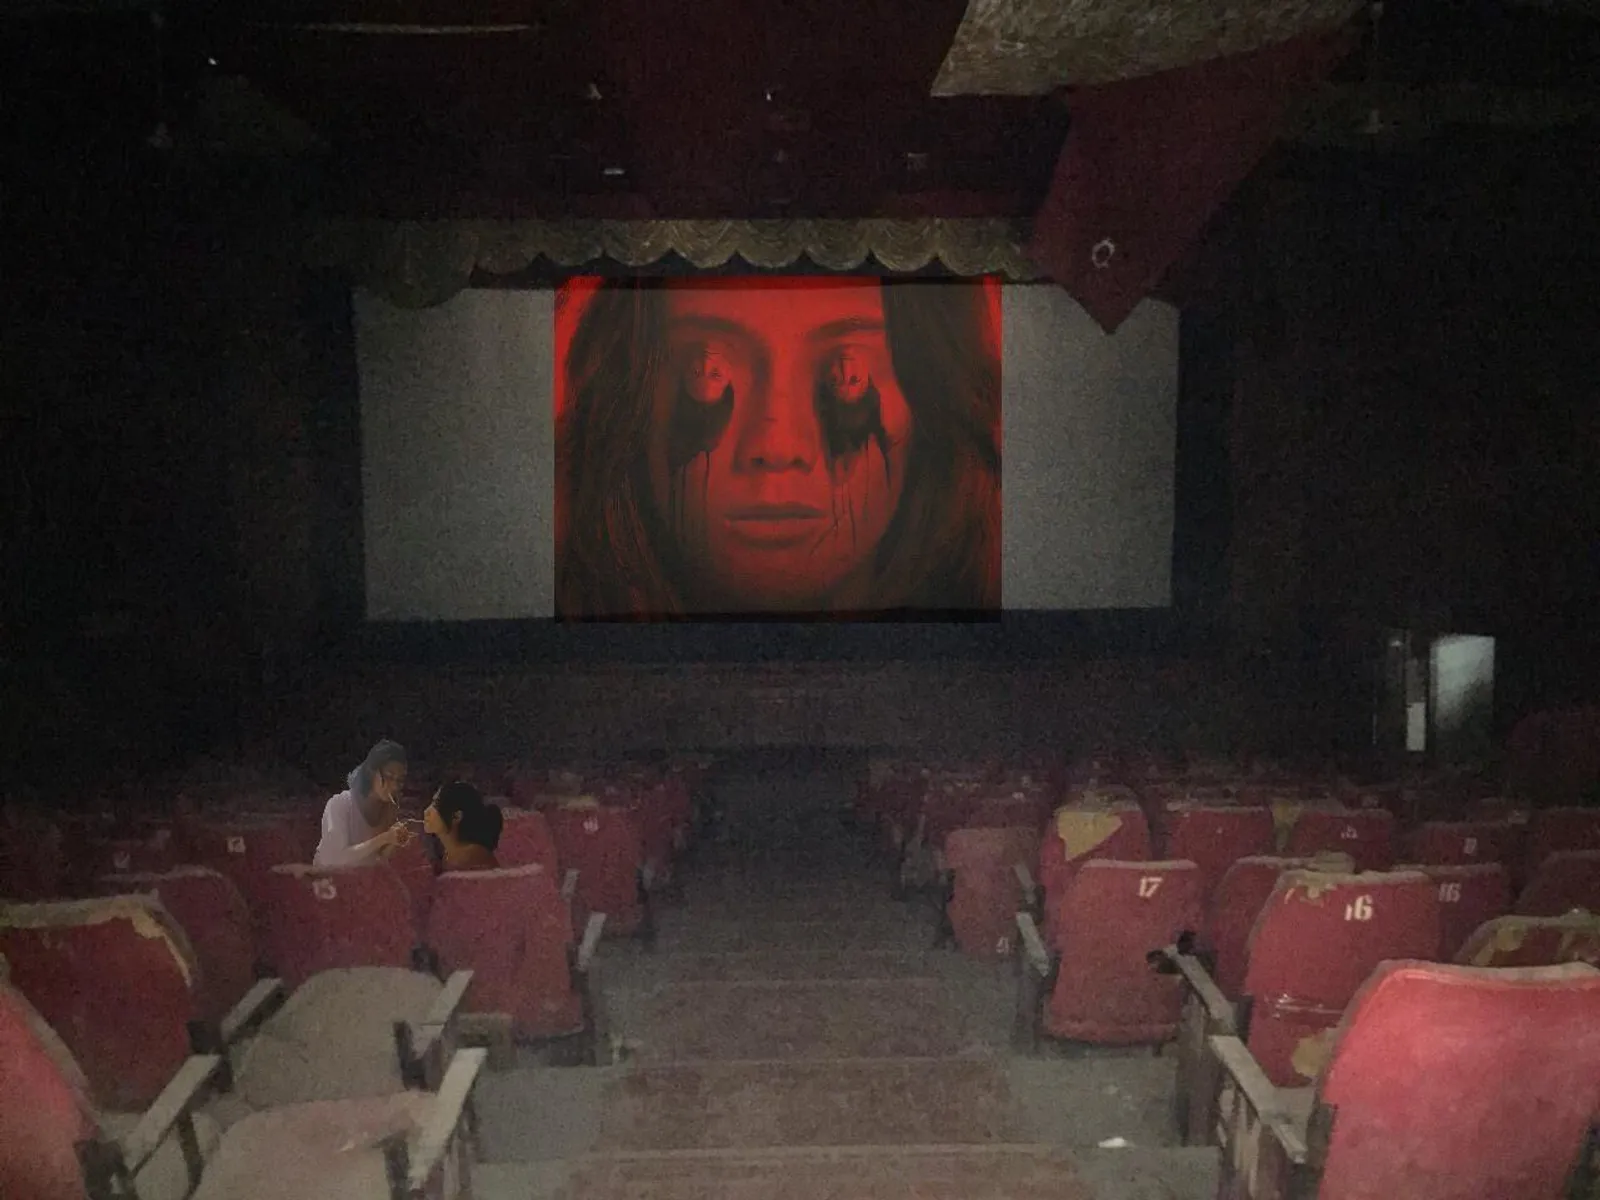 Joko Anwar Ajak Nobar di Bioskop Atoom, Ini Kisah Mistis di Baliknya